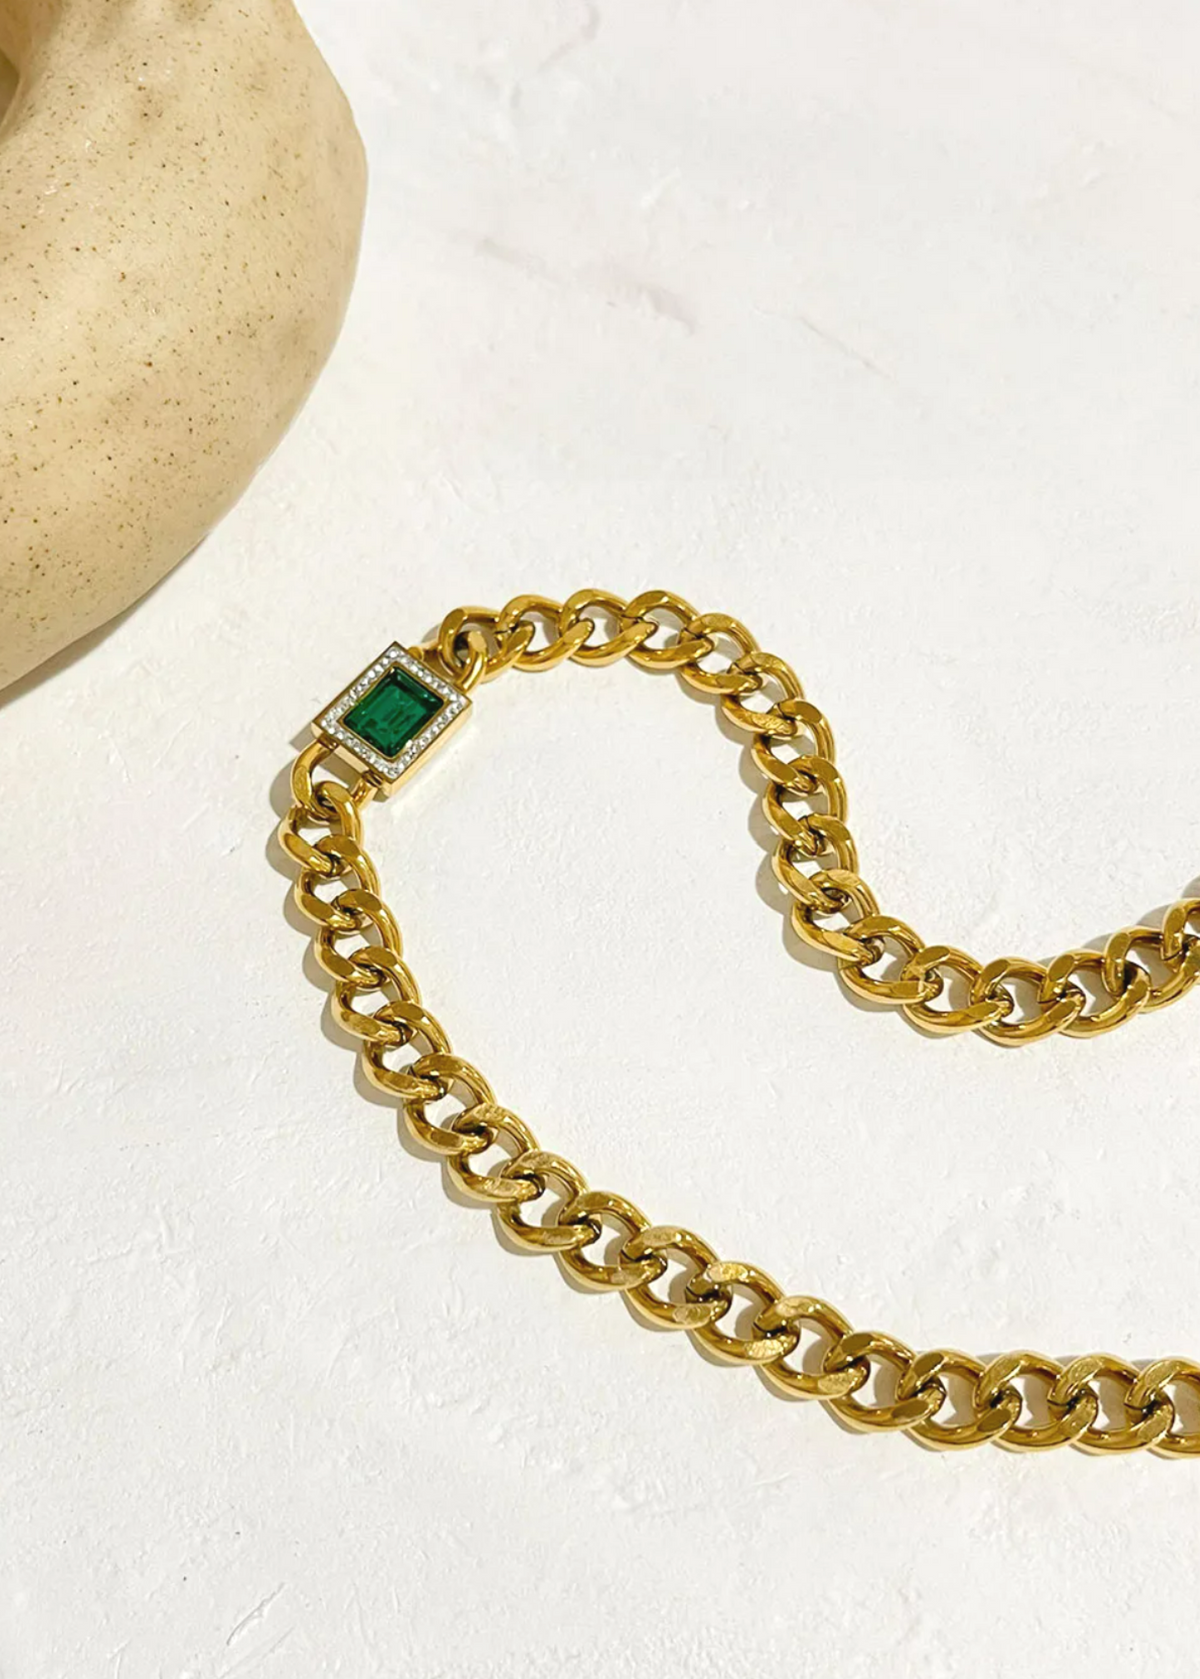 The Emerald chain